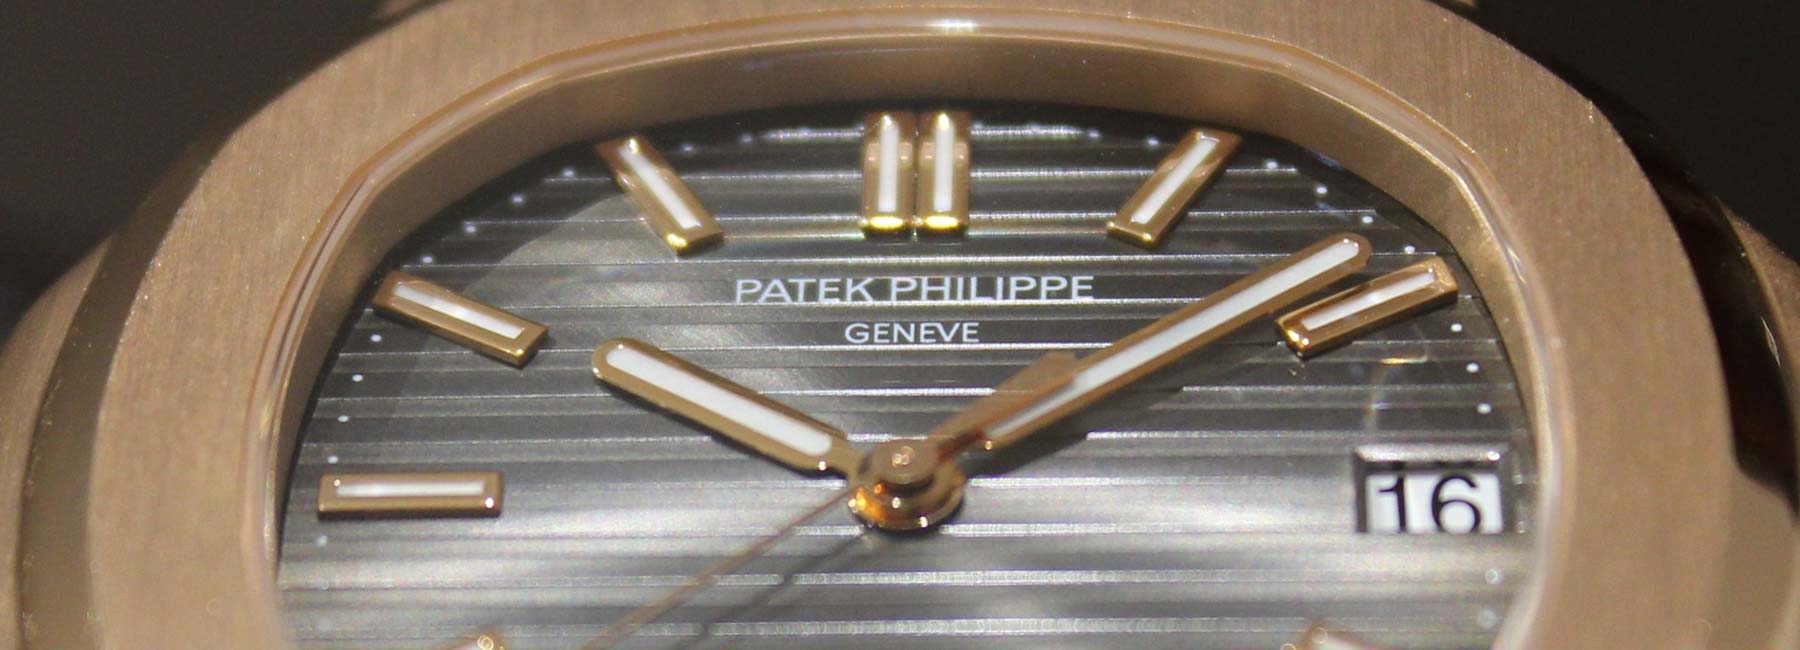 Orologio a Palette MODELLO SP2 - Collezionismo In vendita a Milano